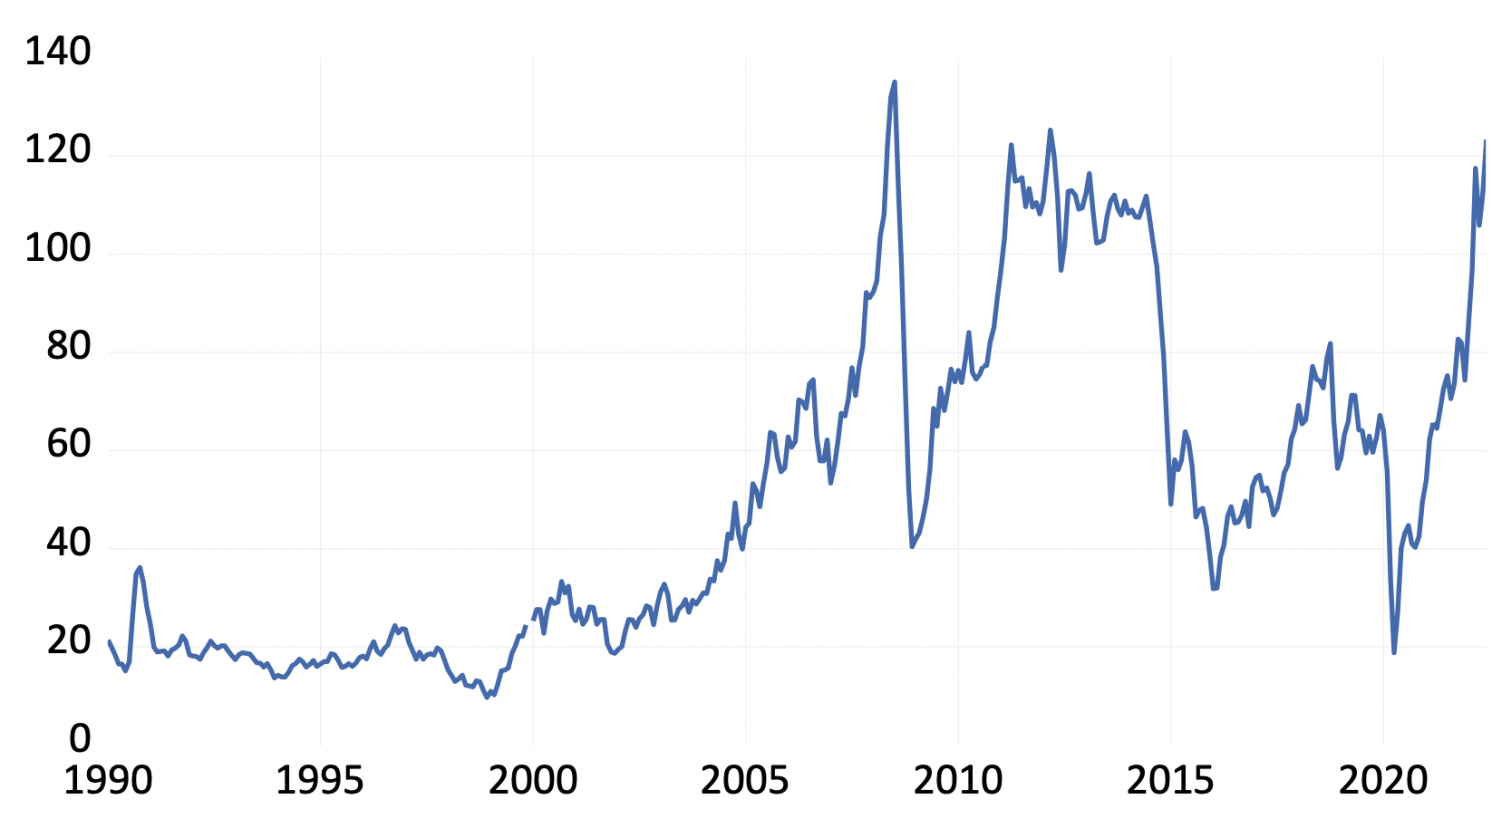 Brent oil price in US dollars